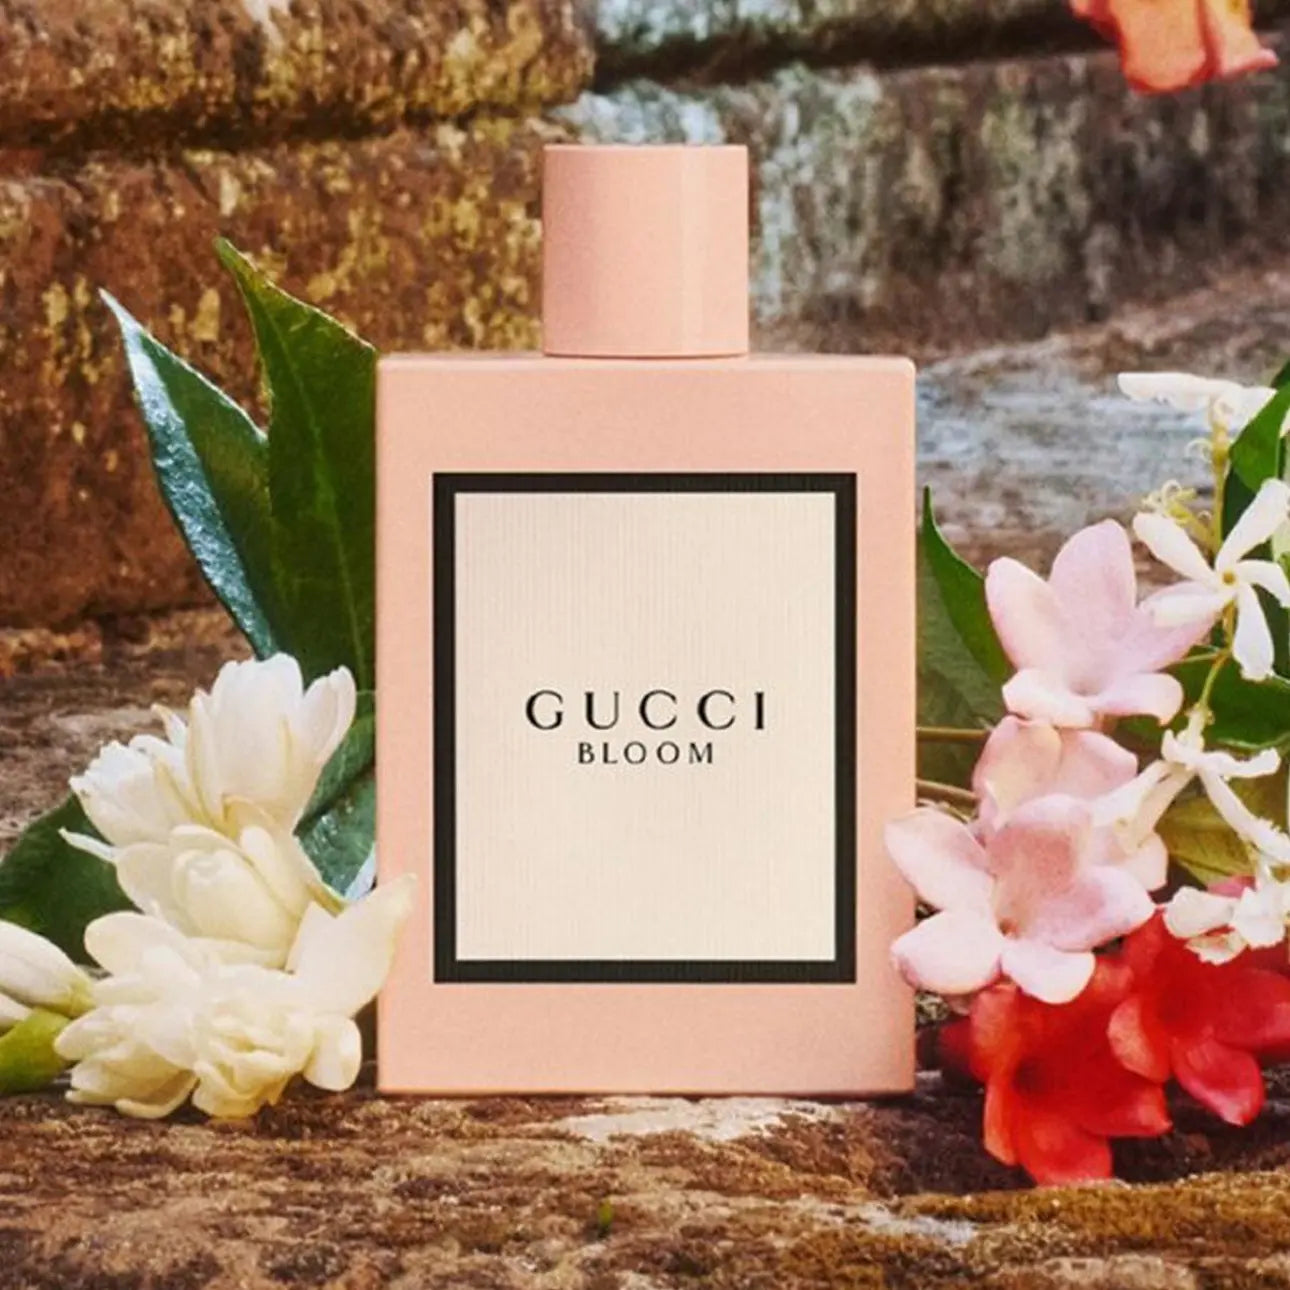 GUCCI Bloom Eau De Parfum 30ml